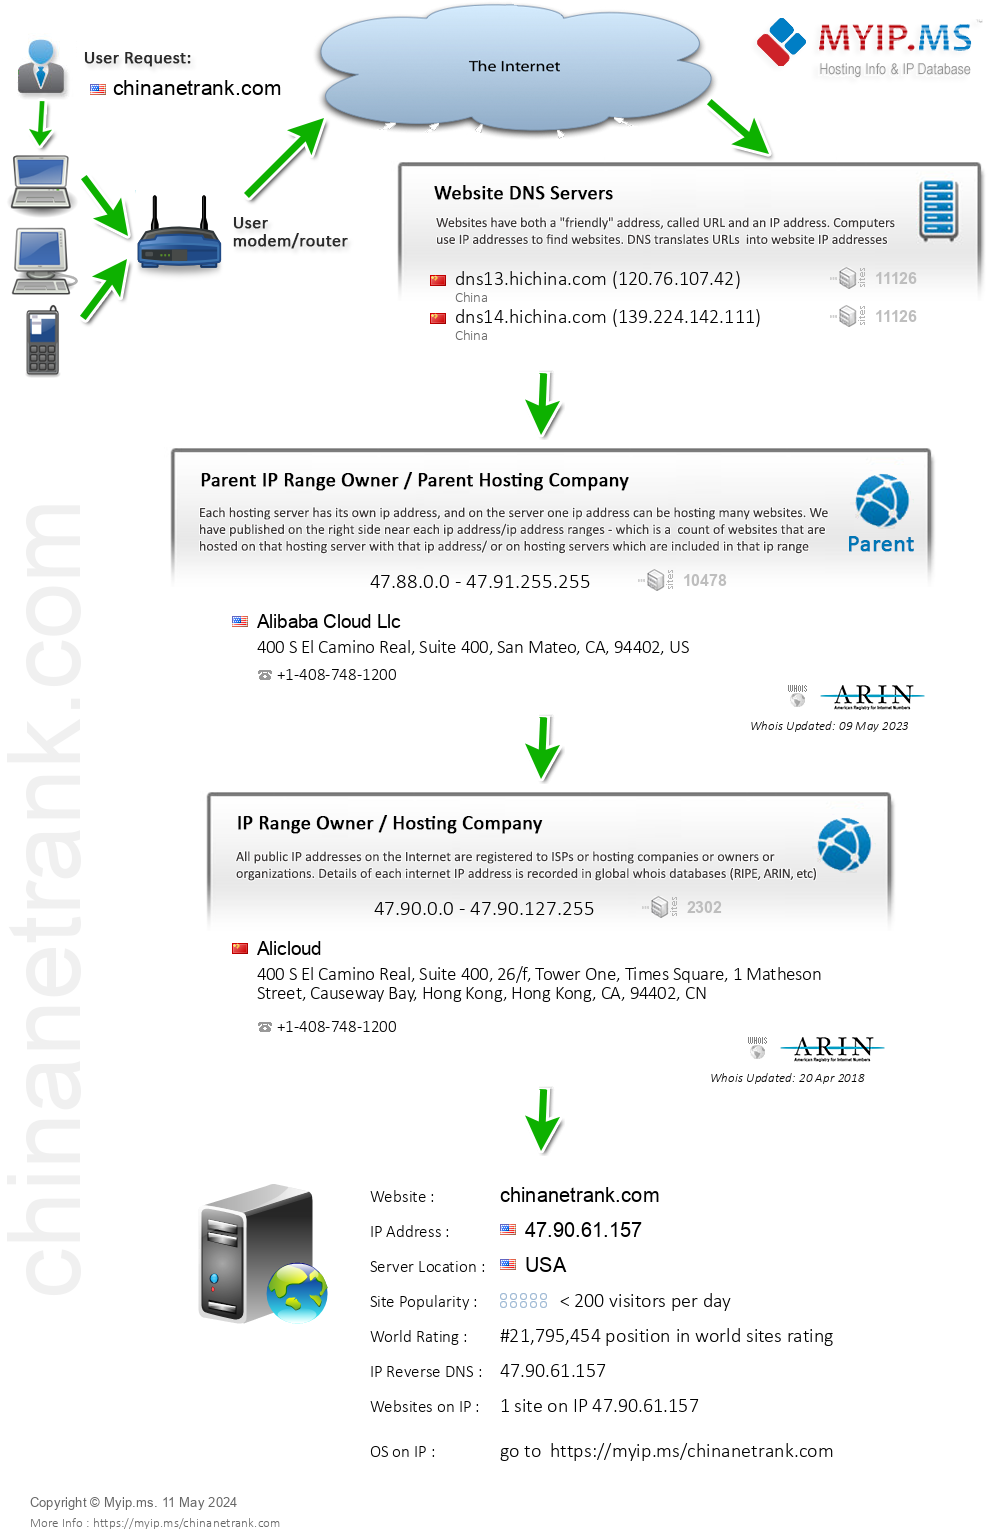 Chinanetrank.com - Website Hosting Visual IP Diagram